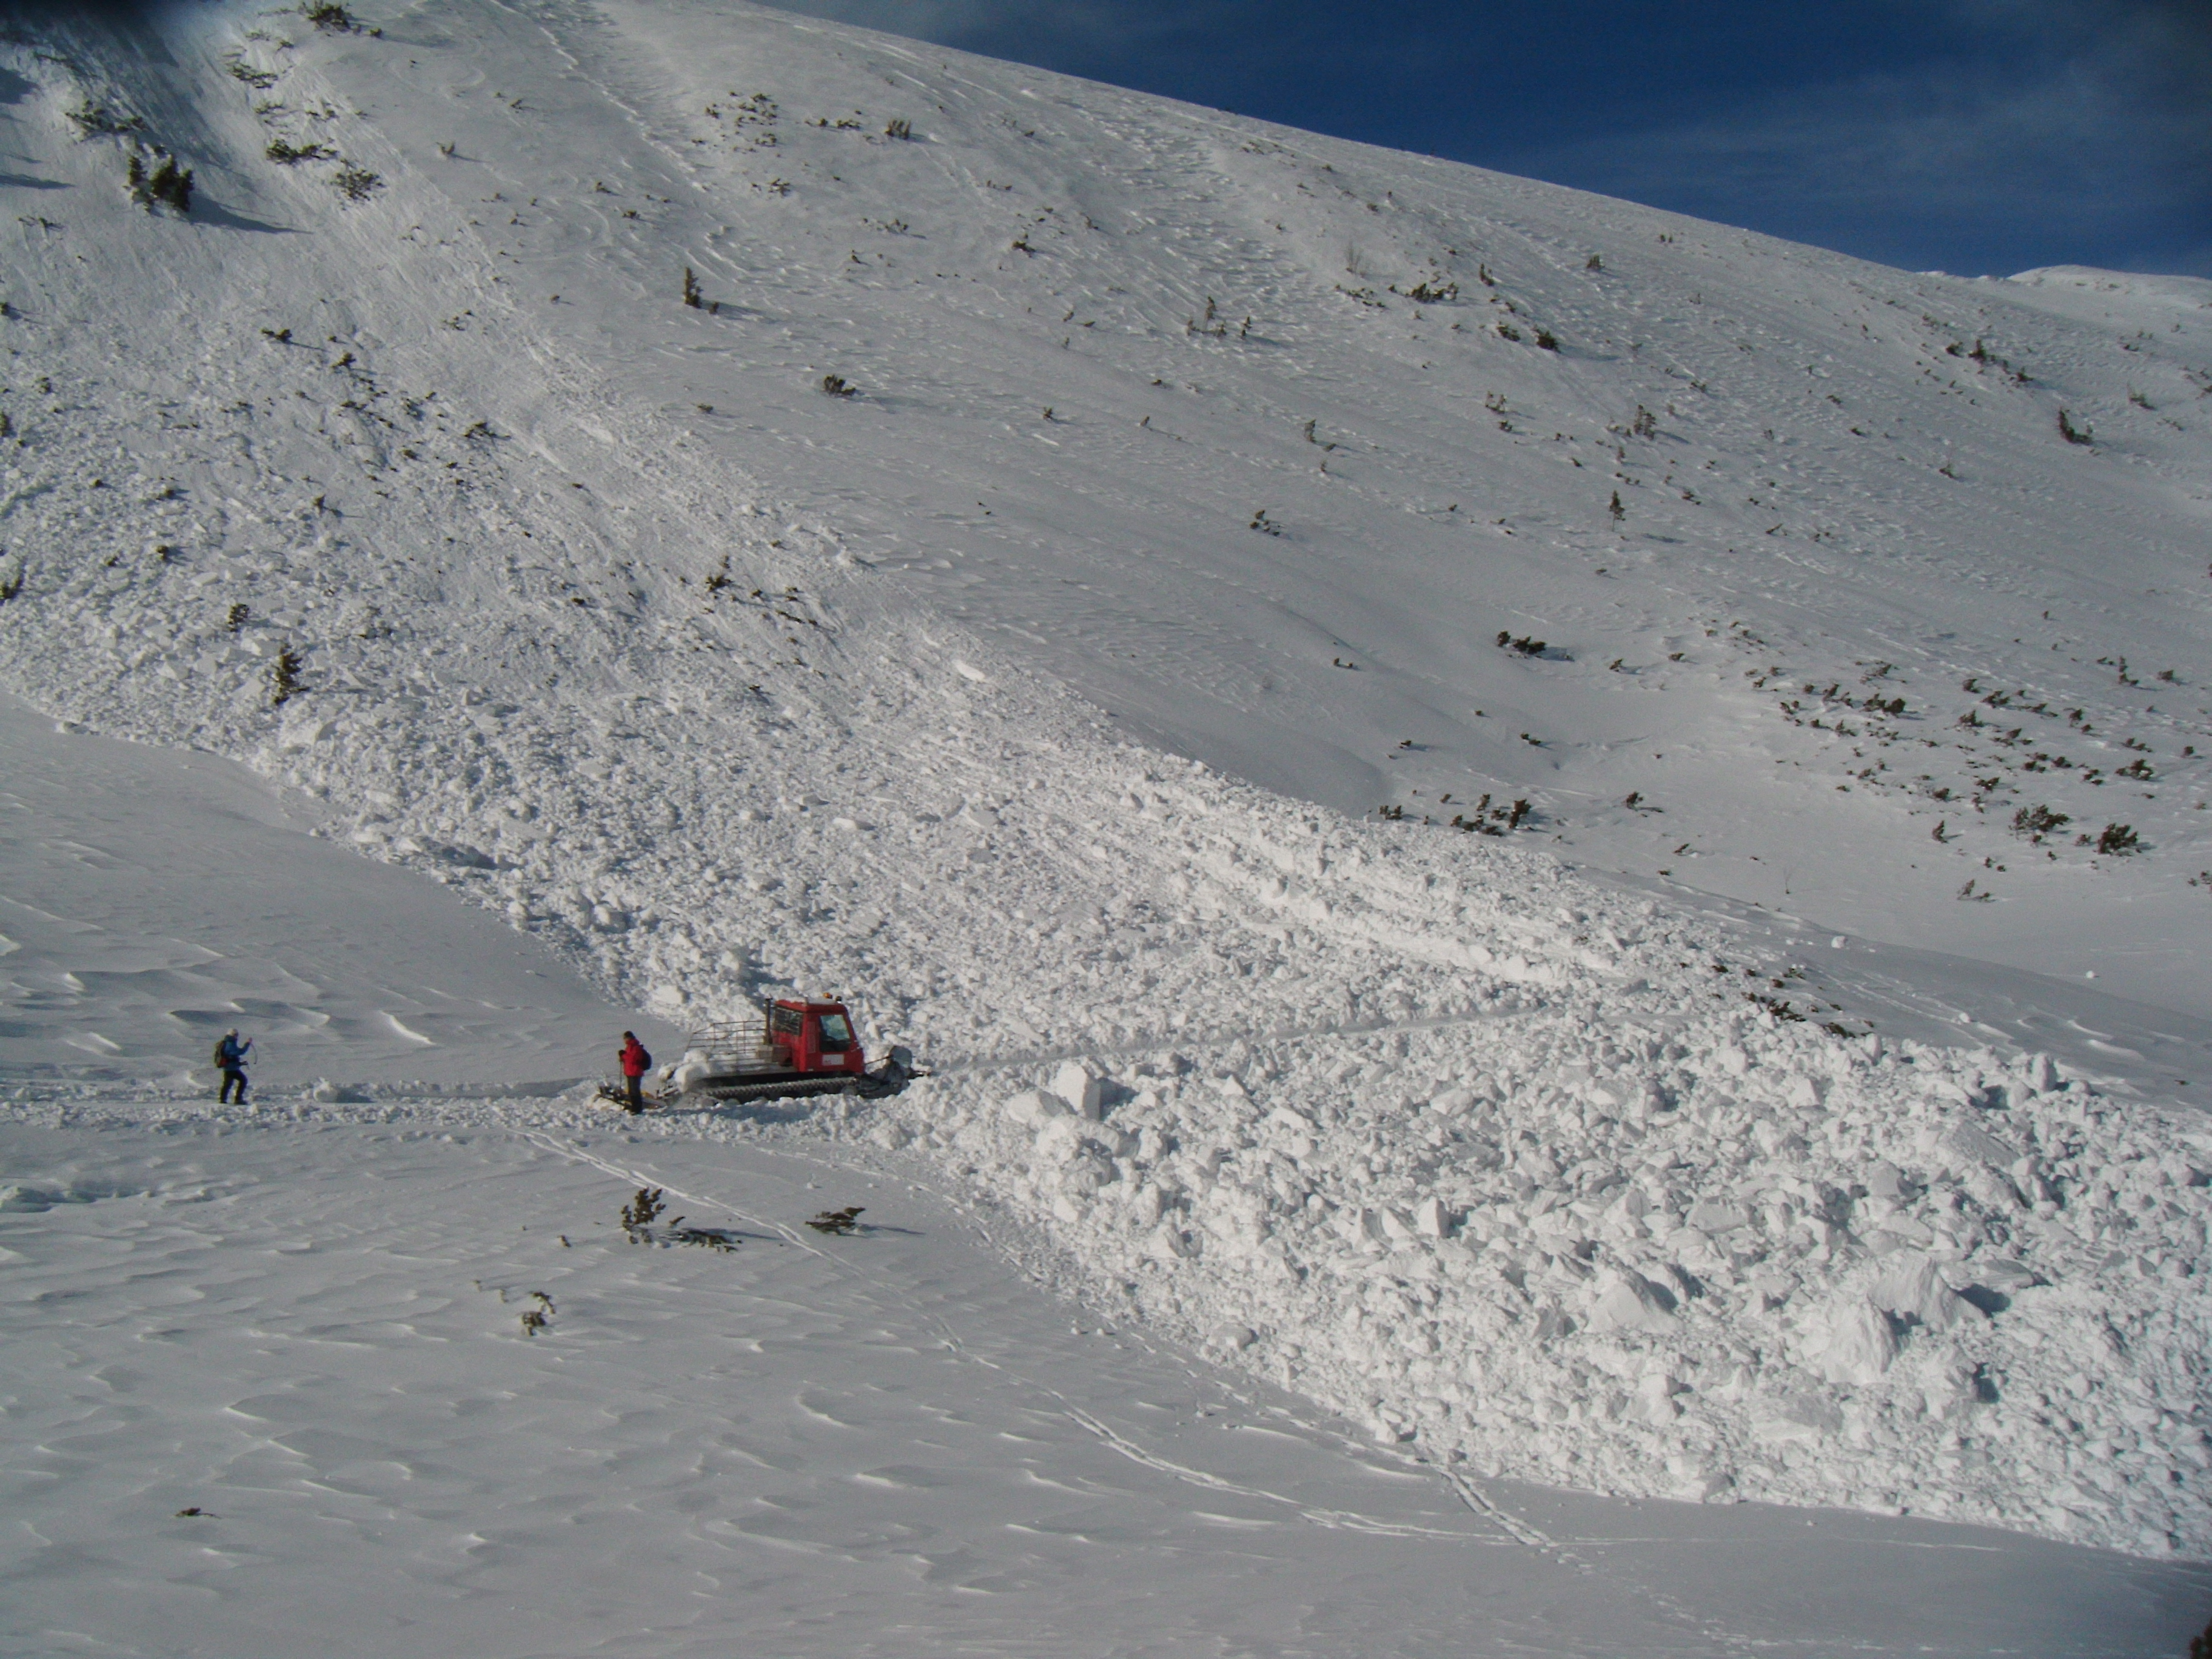  Lawina śnieżna spadła na szlak turystyczny w okolicach Kotła Gąsienicowego w Tatrach (fot. B. Chlipała)